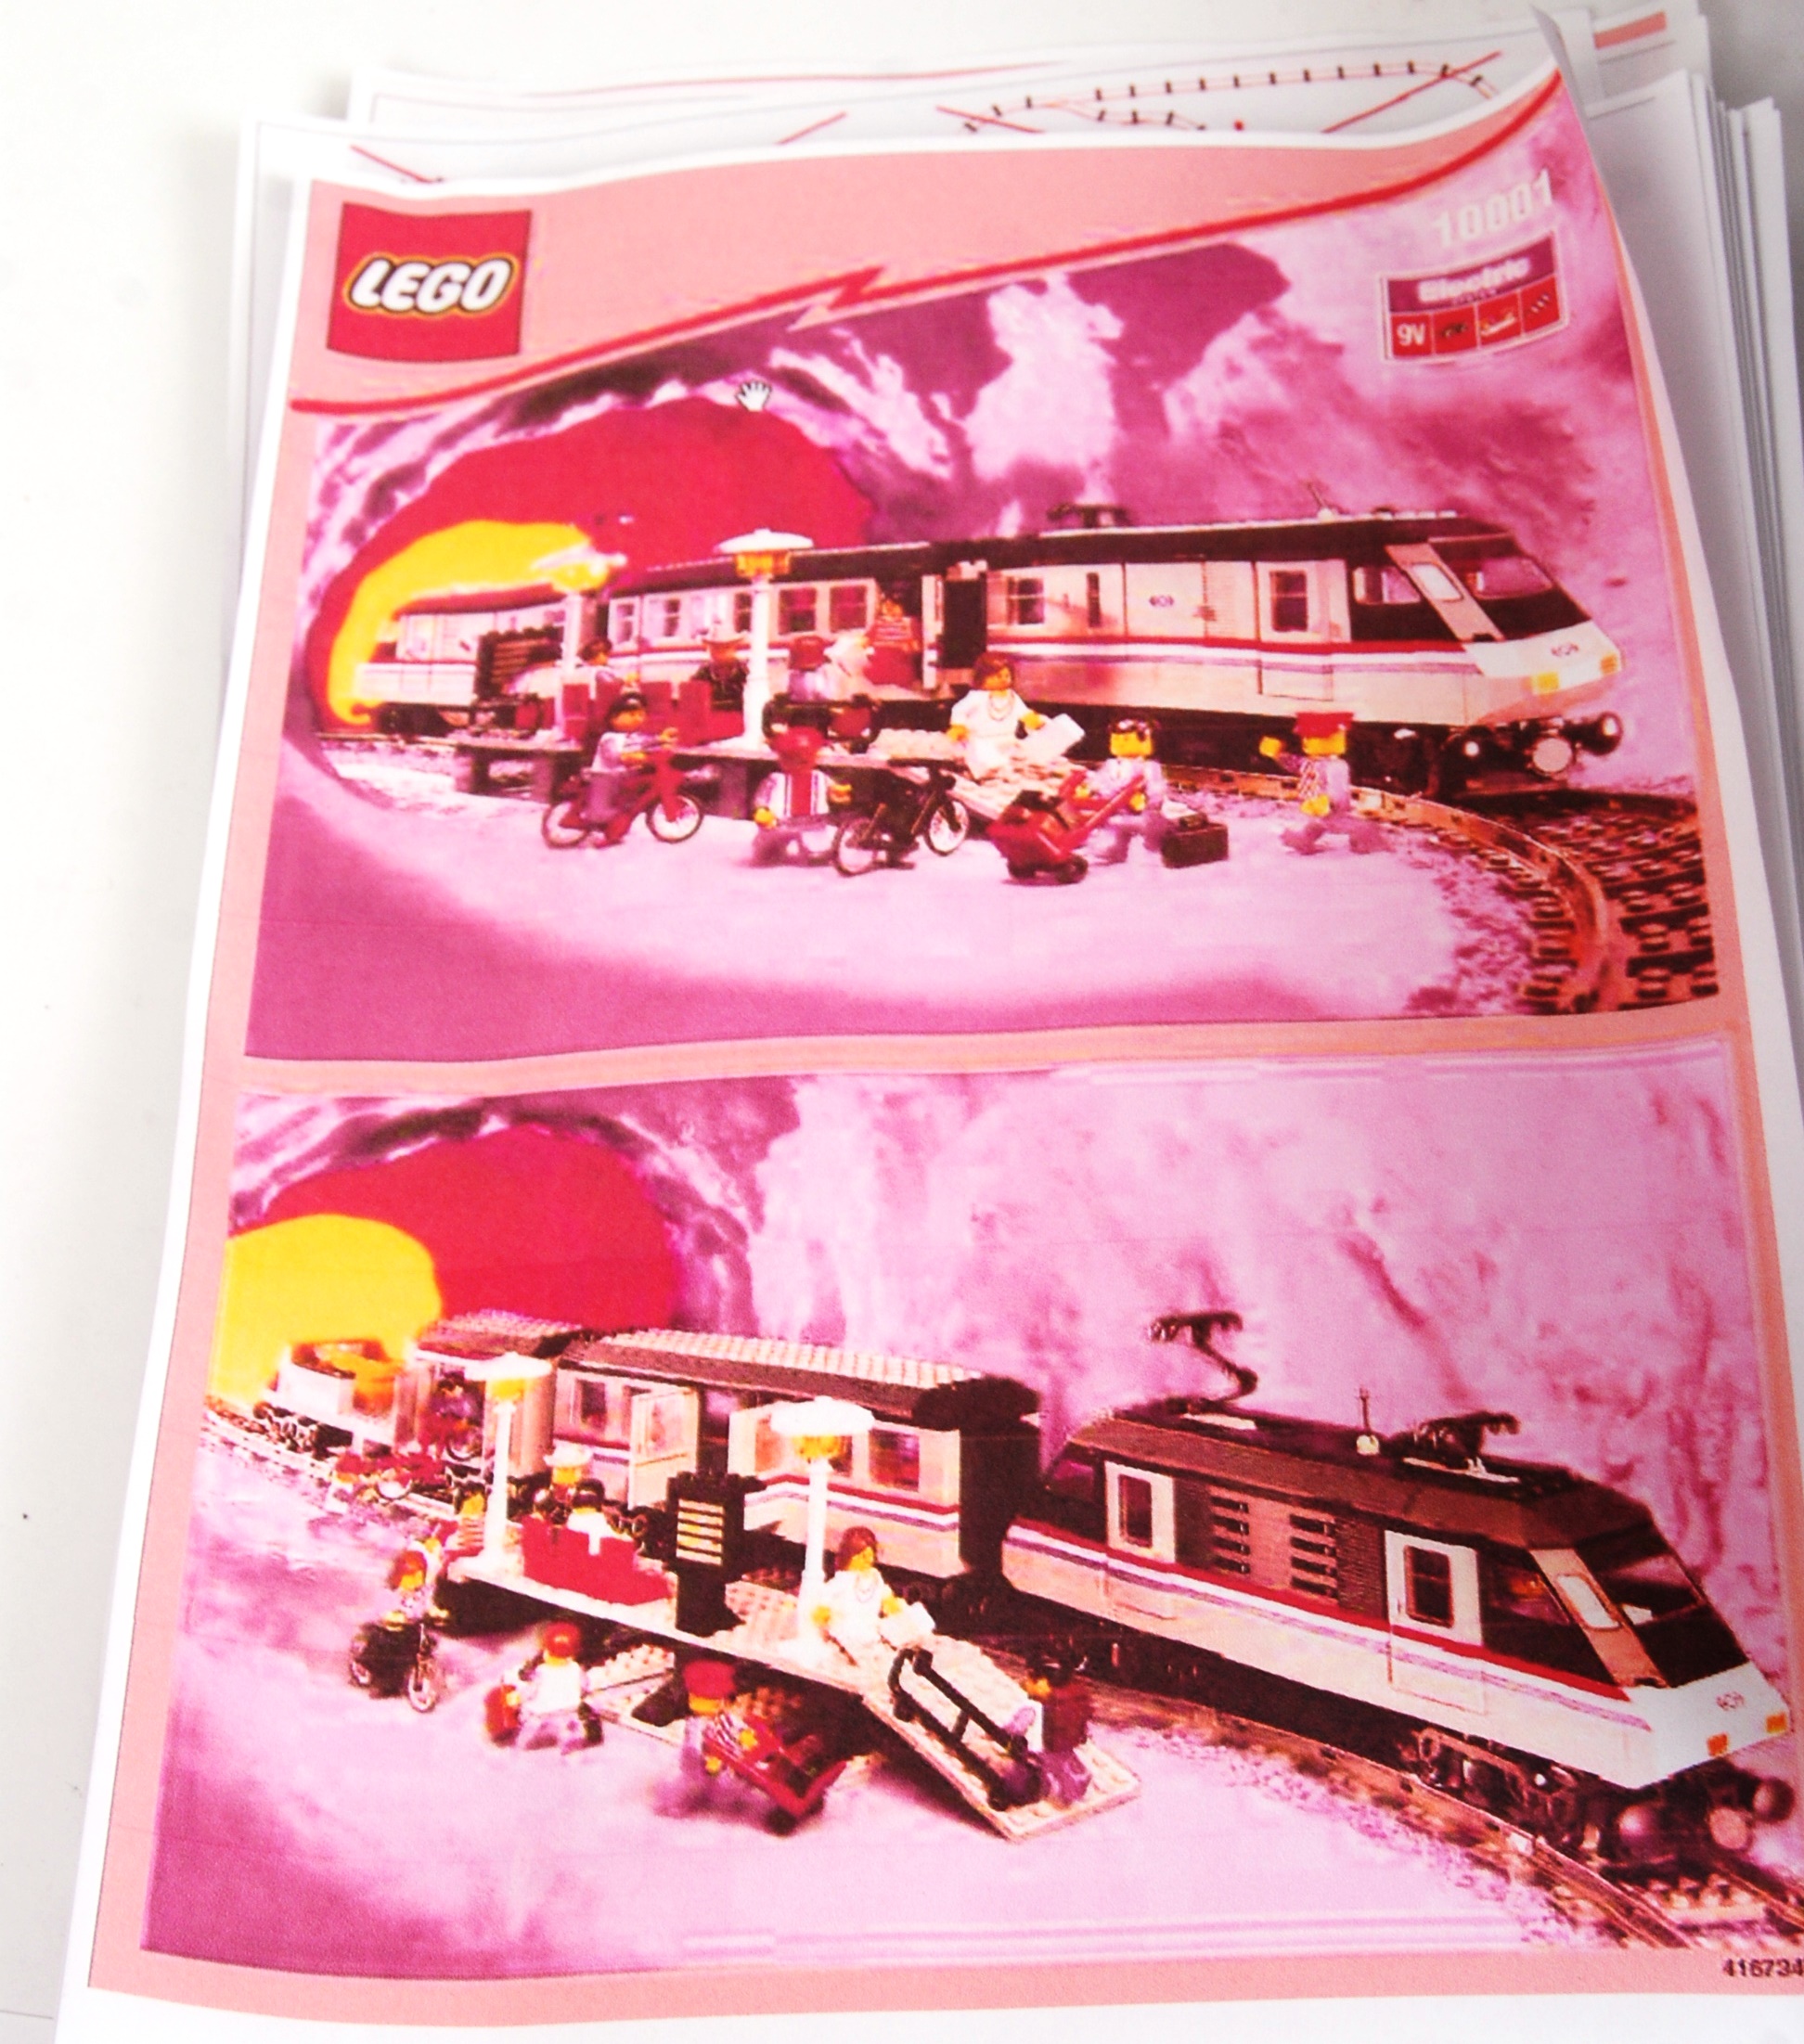 LEGO METROLINER; An original vintage Lego Metroliner 9v electric train set. - Image 5 of 5